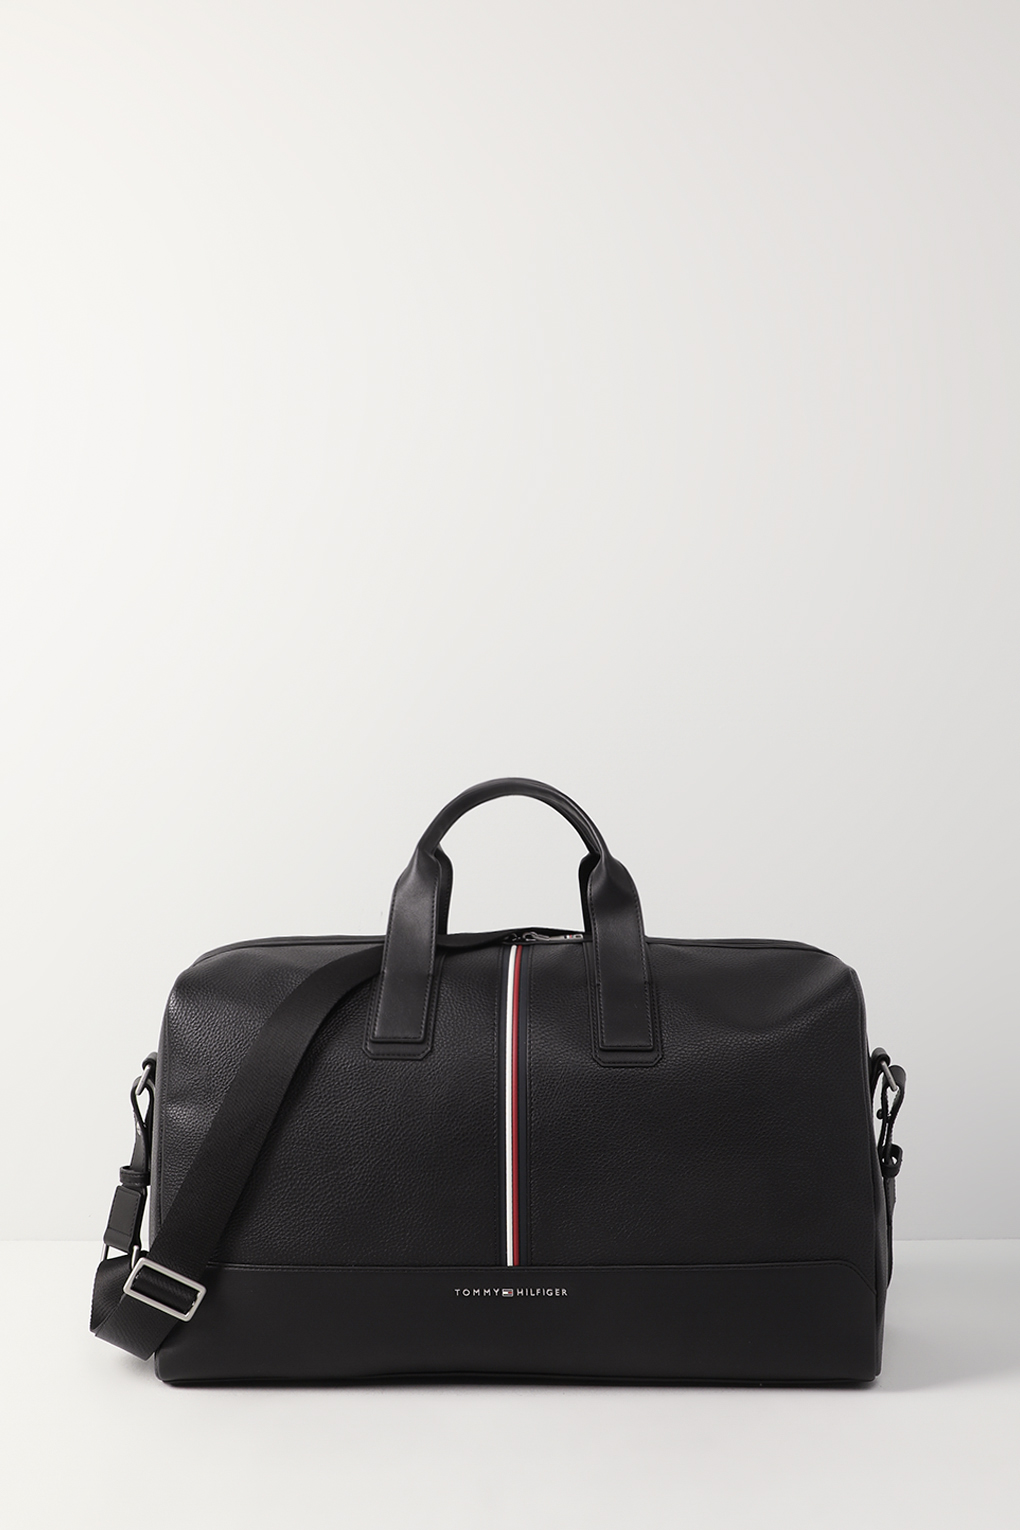 Дорожная сумка мужская Tommy Hilfiger AM0AM11821 черная, 28x48x19 см